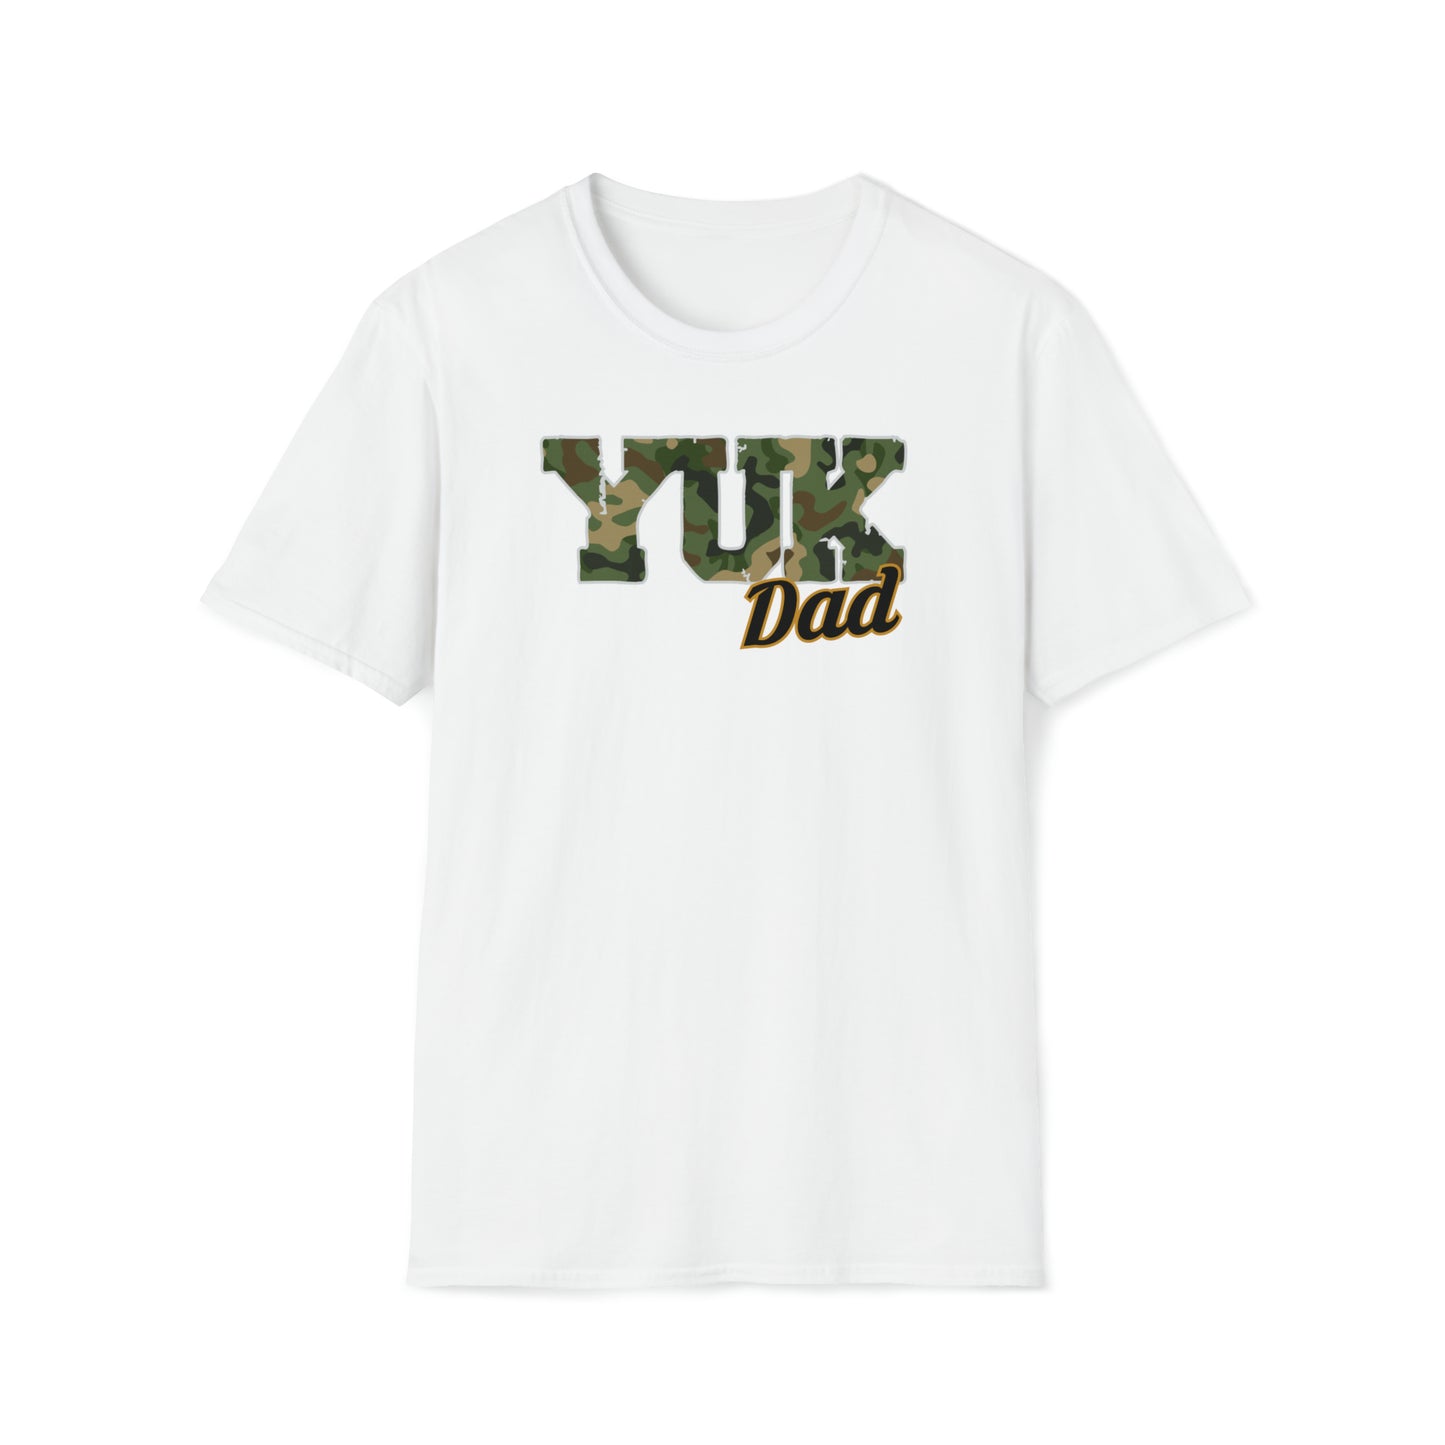 YUK DAD | Unisex Softstyle T-Shirt